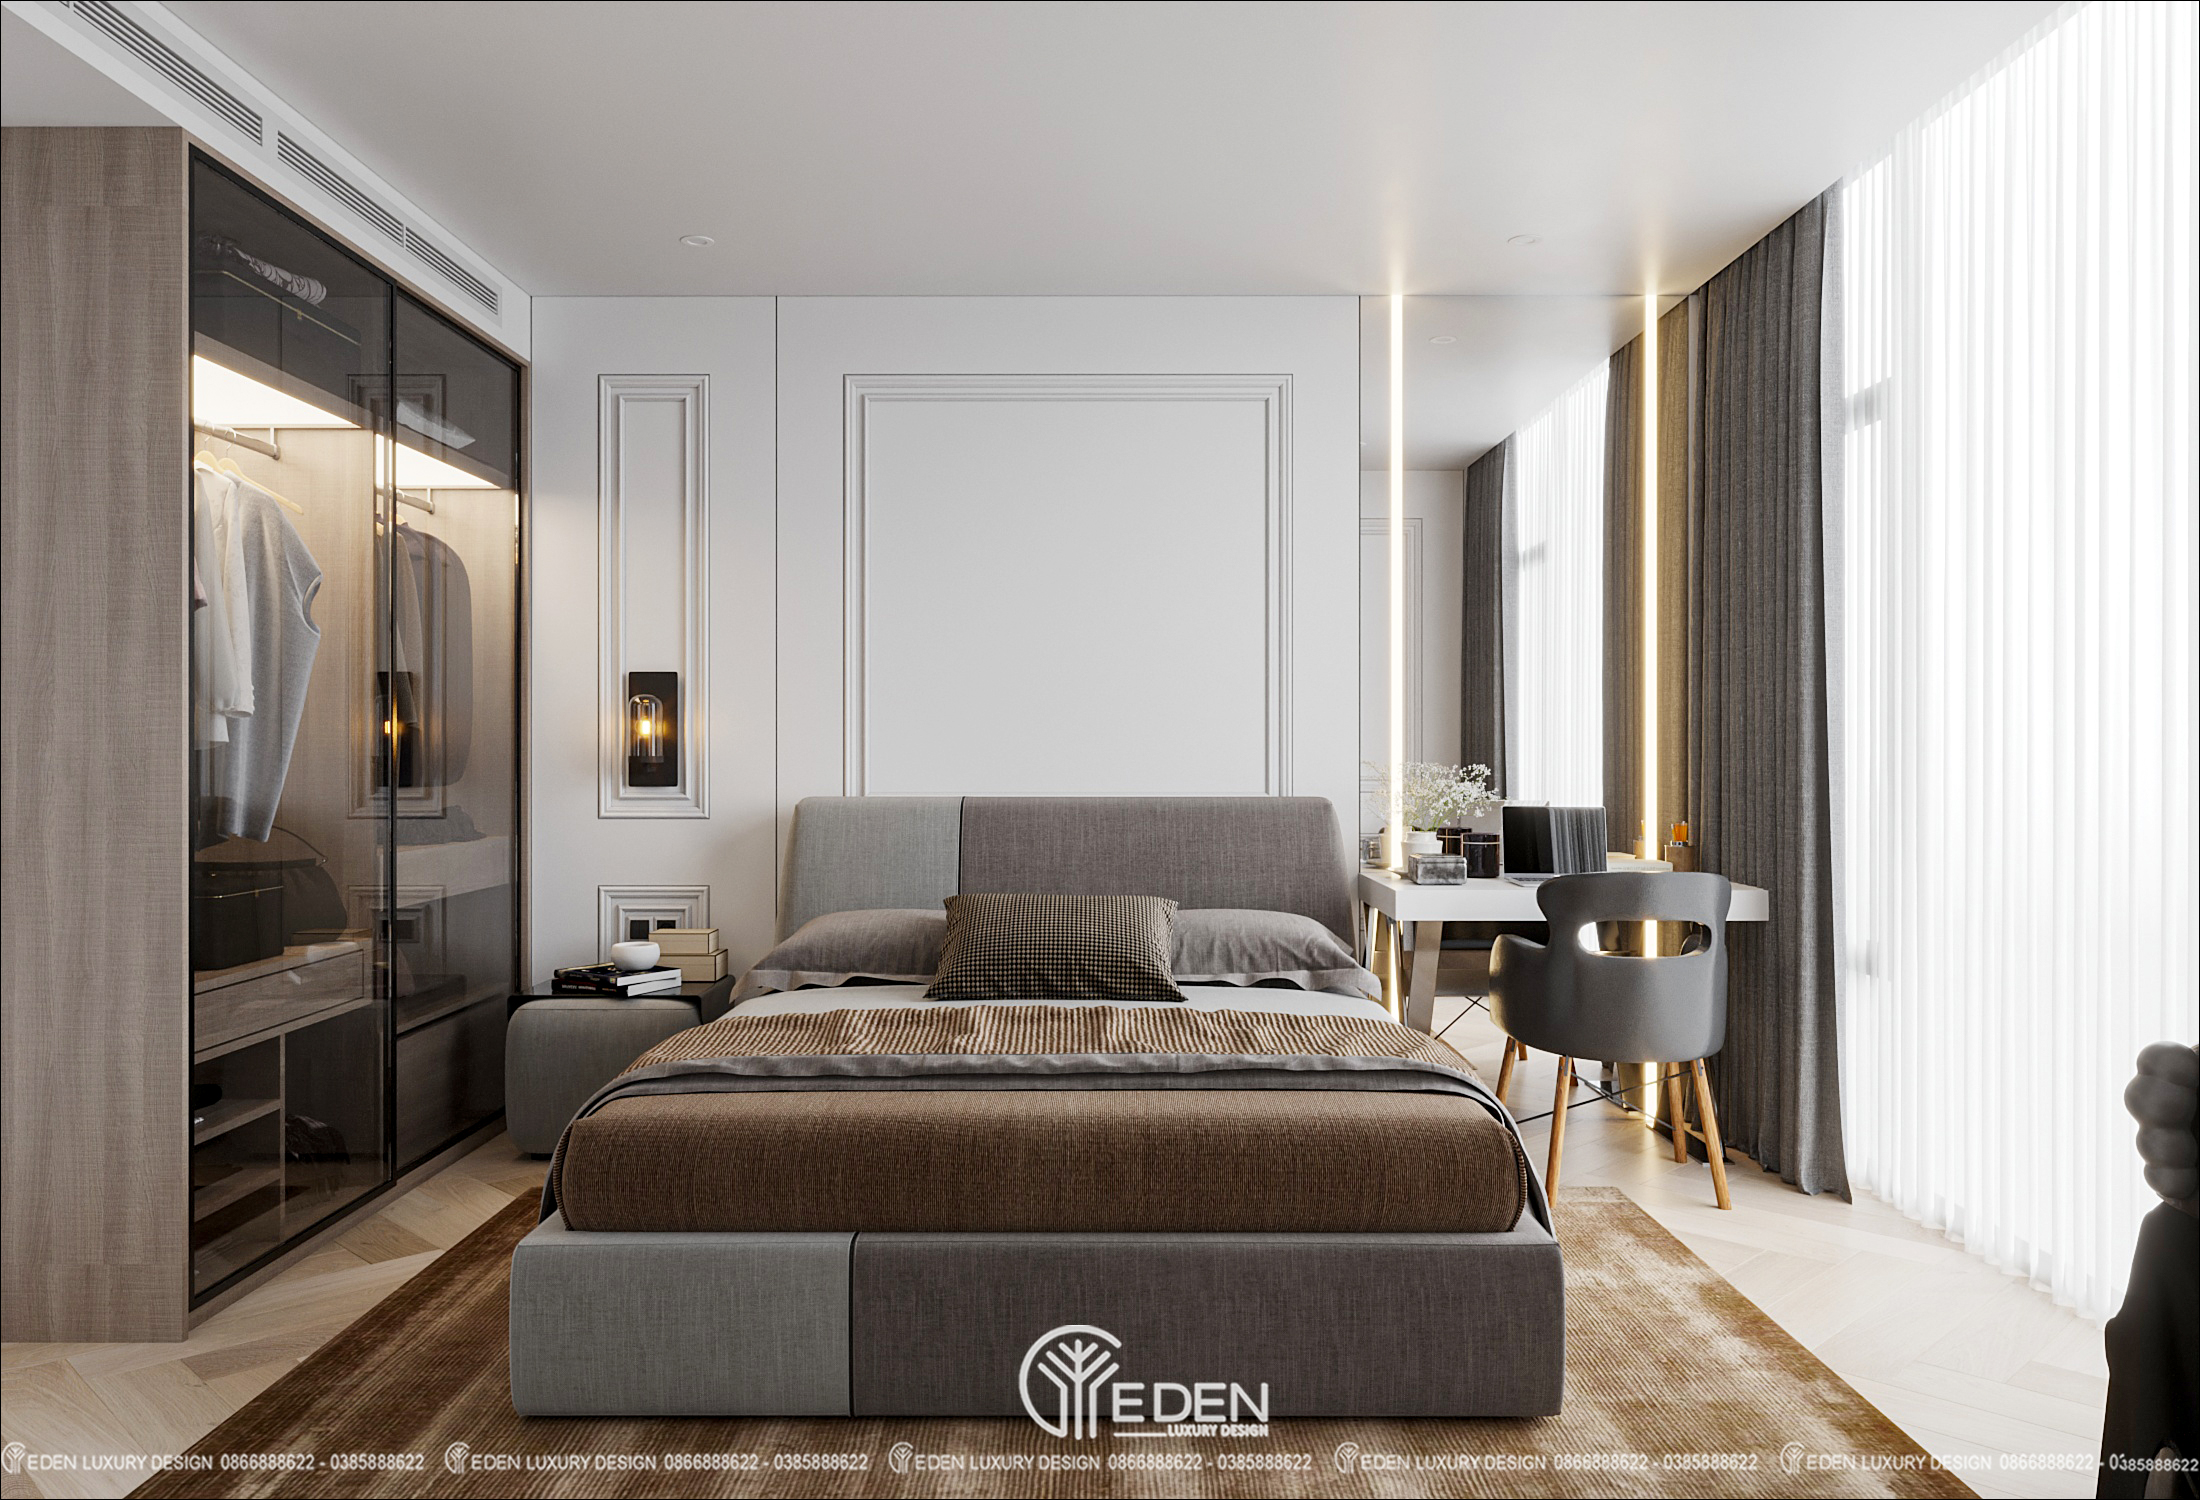 Phòng ngủ số 1 được thiết kế hiện đại, đơn giản với tone màu ghi - trắng sang trọng, lịch thiệp.